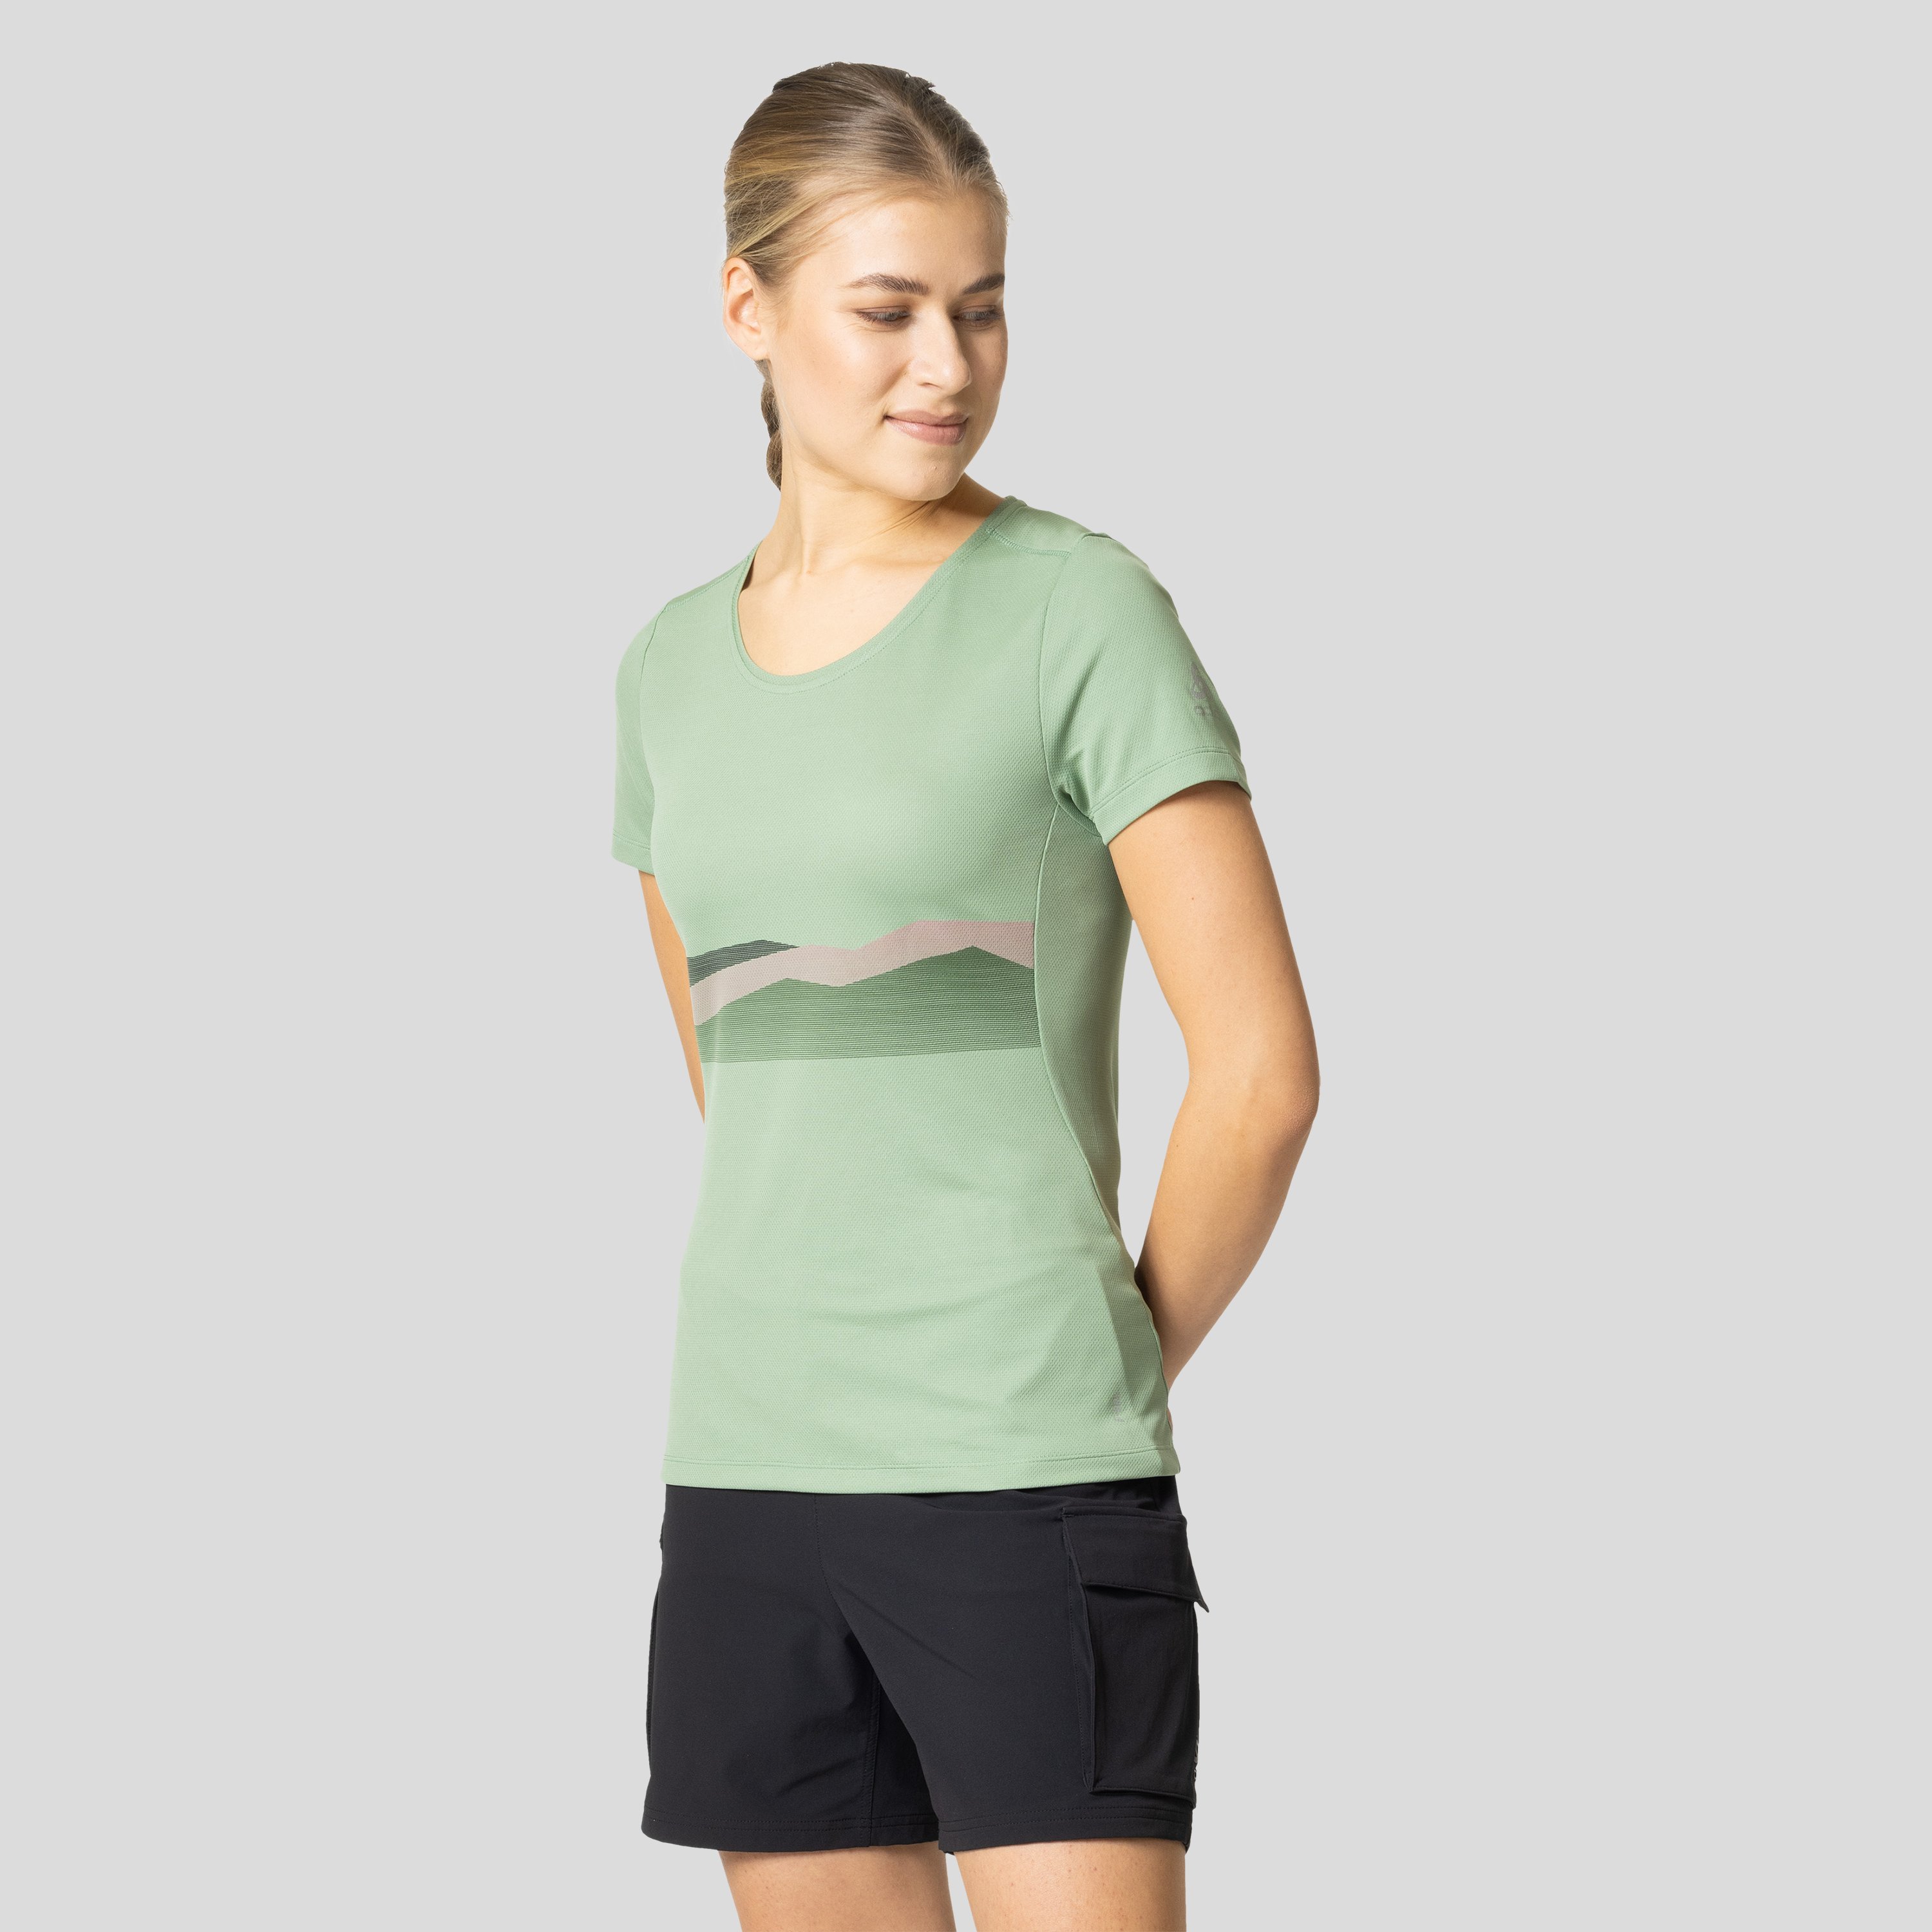 ODLO F-Dry T-Shirt mit Bergkamm-Print für Damen, L, grau